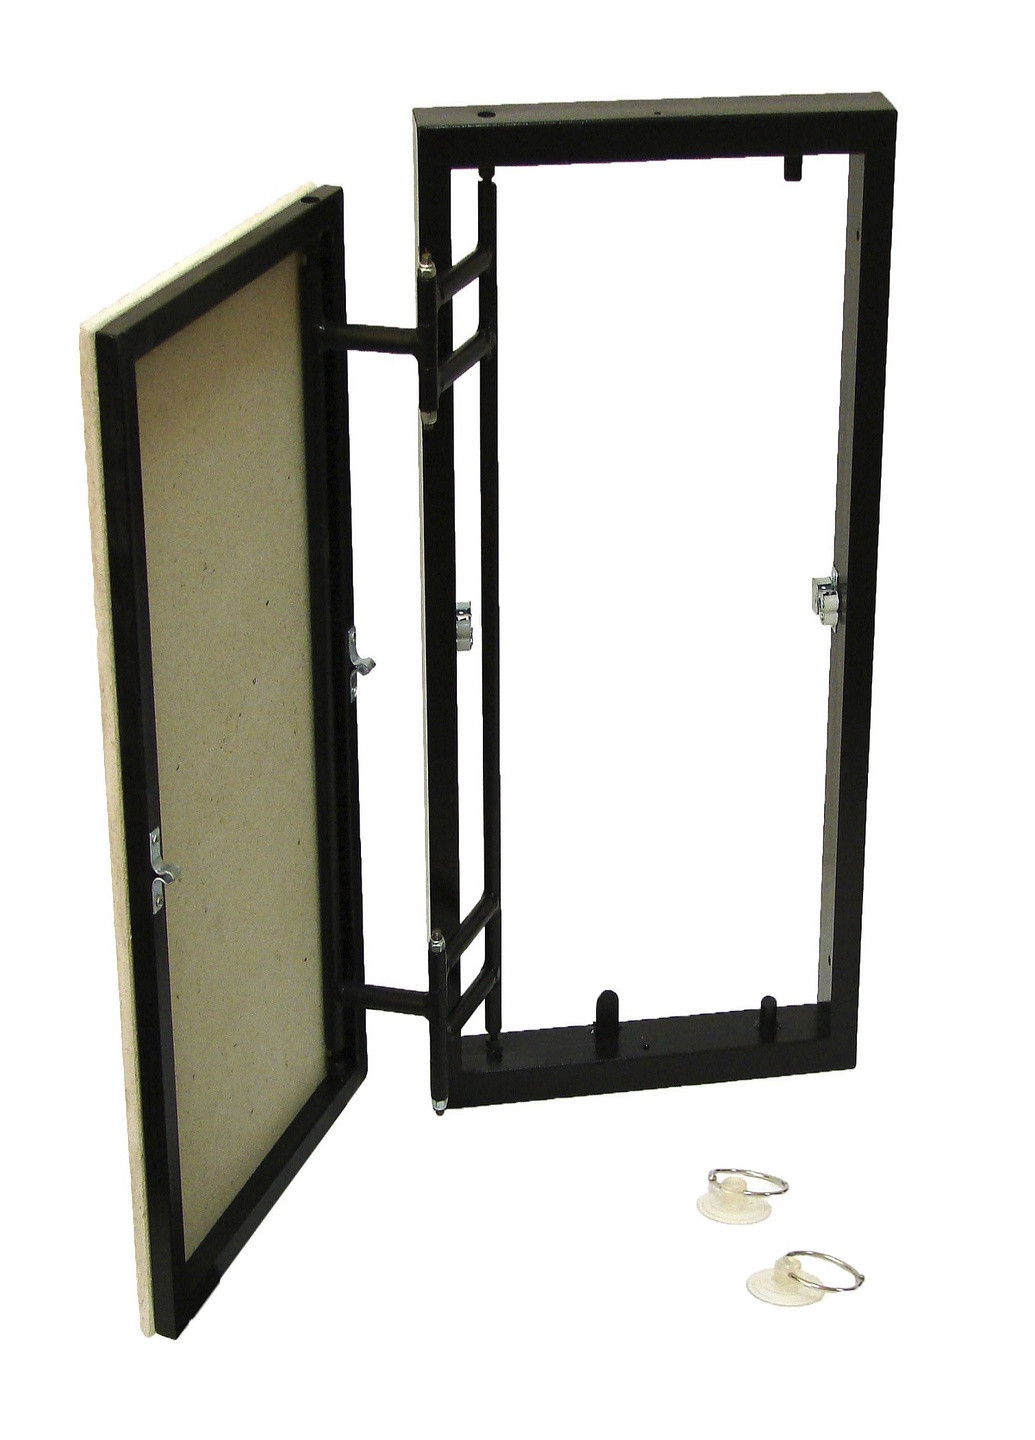 Ревизионный люк скрытого монтажа под плитку фронтально-распашного типа 250x600 ревизионная дверца для плитки (1221) S-Dom (295035705)